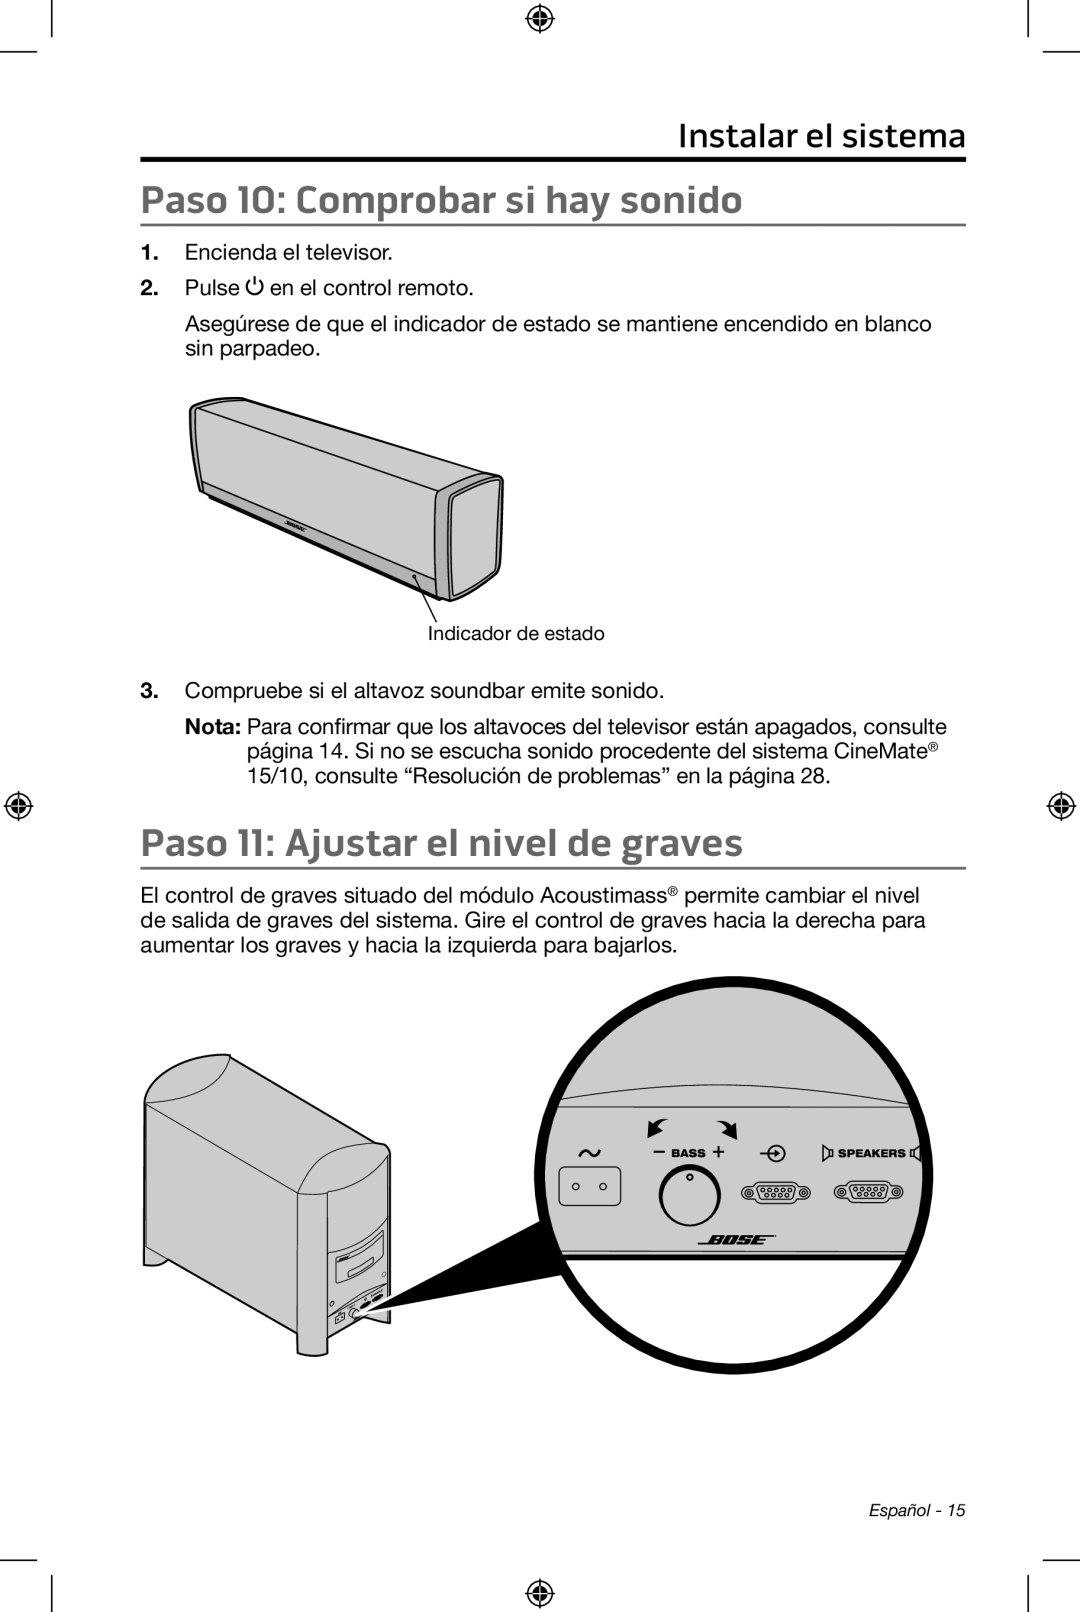 Bose CineMate 15/10 manual Paso 10: Comprobar si hay sonido, Paso 11: Ajustar el nivel de graves, Instalar el sistema 